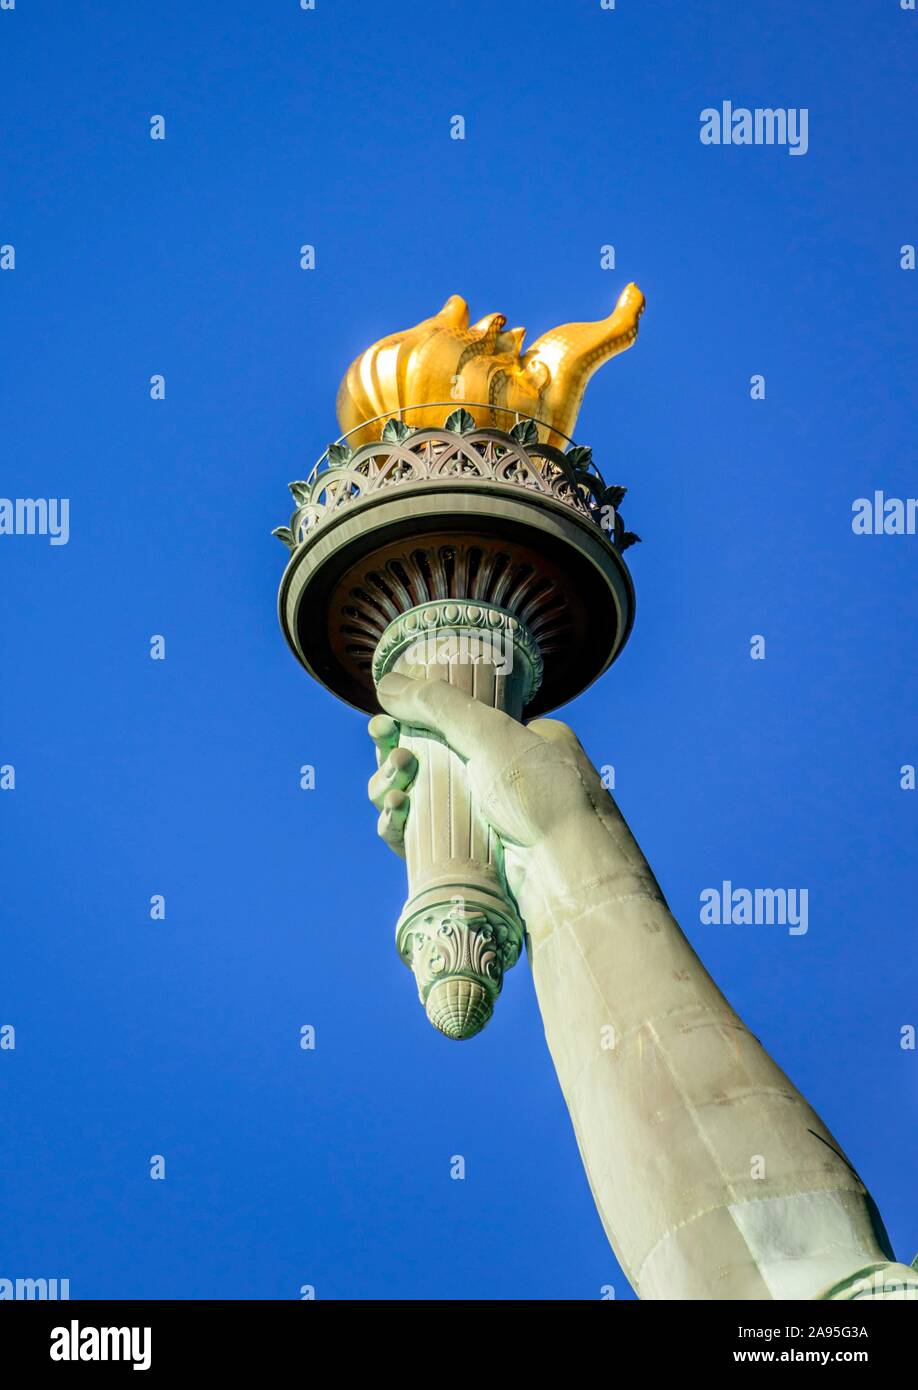 La main avec la flamme d'or, la Statue de la liberté, le Monument National de la Statue de la liberté, Liberty Island, New York City, New York, USA Banque D'Images